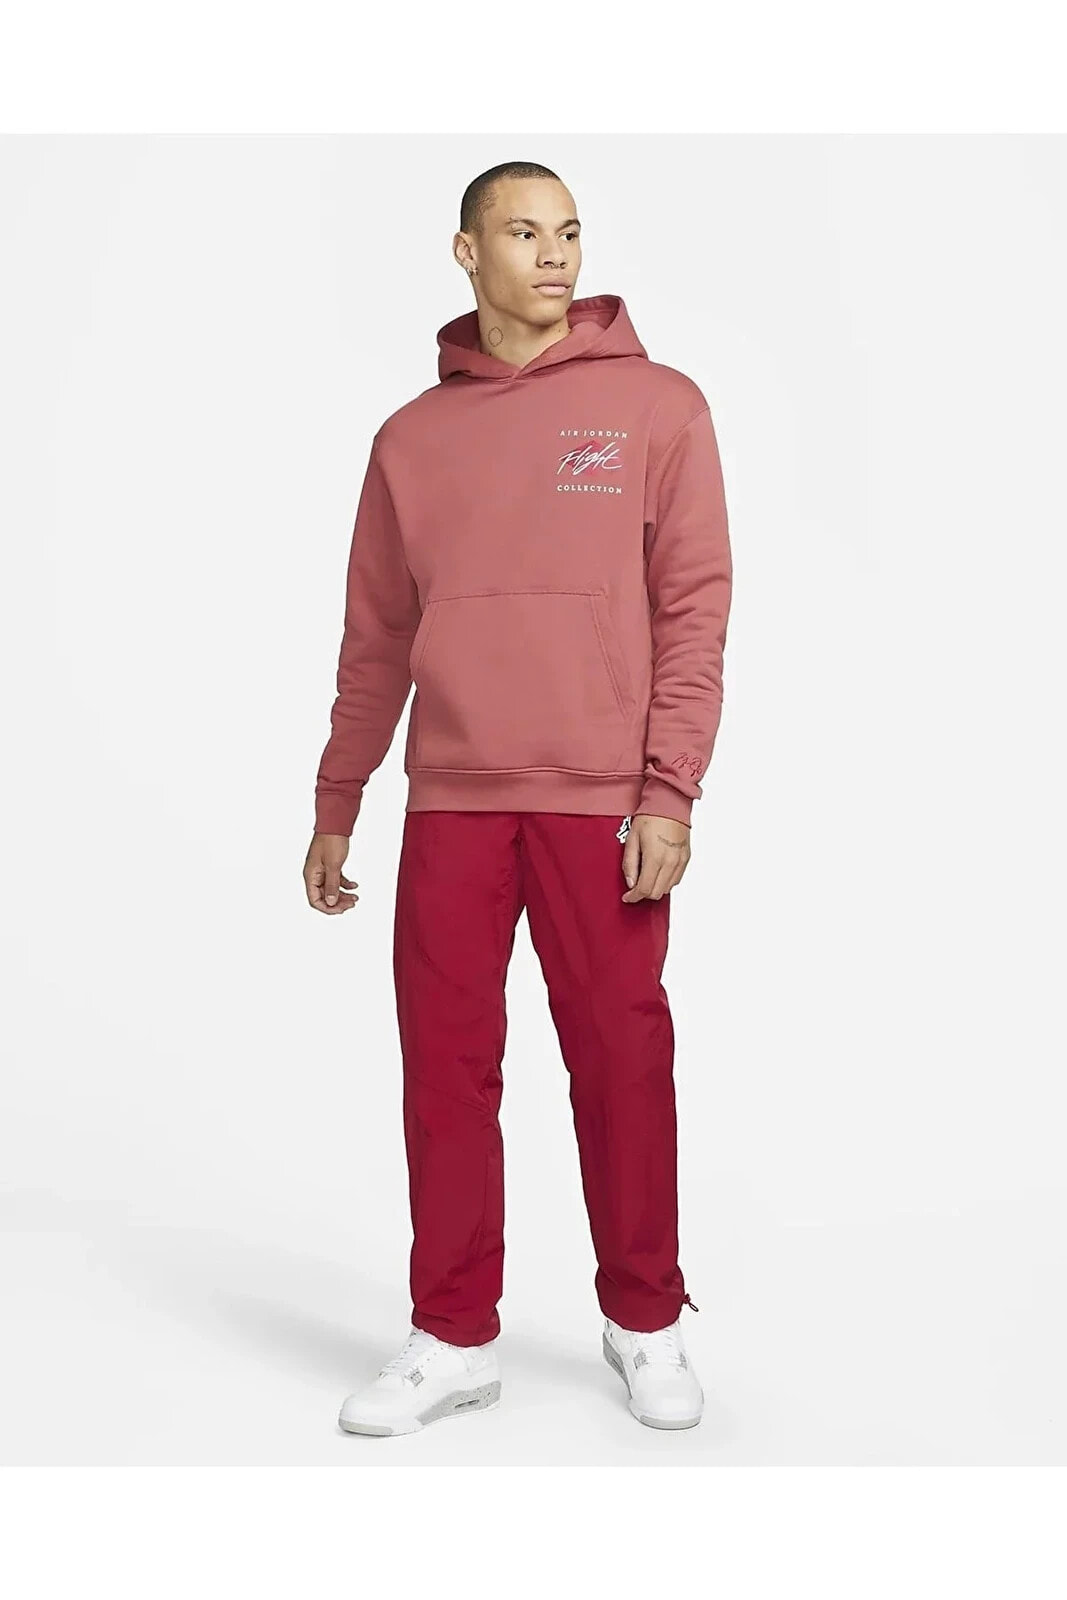 Jordan Essentials Graphic Fleece Pullover Hoodie Sweatshirt Dh9019-691